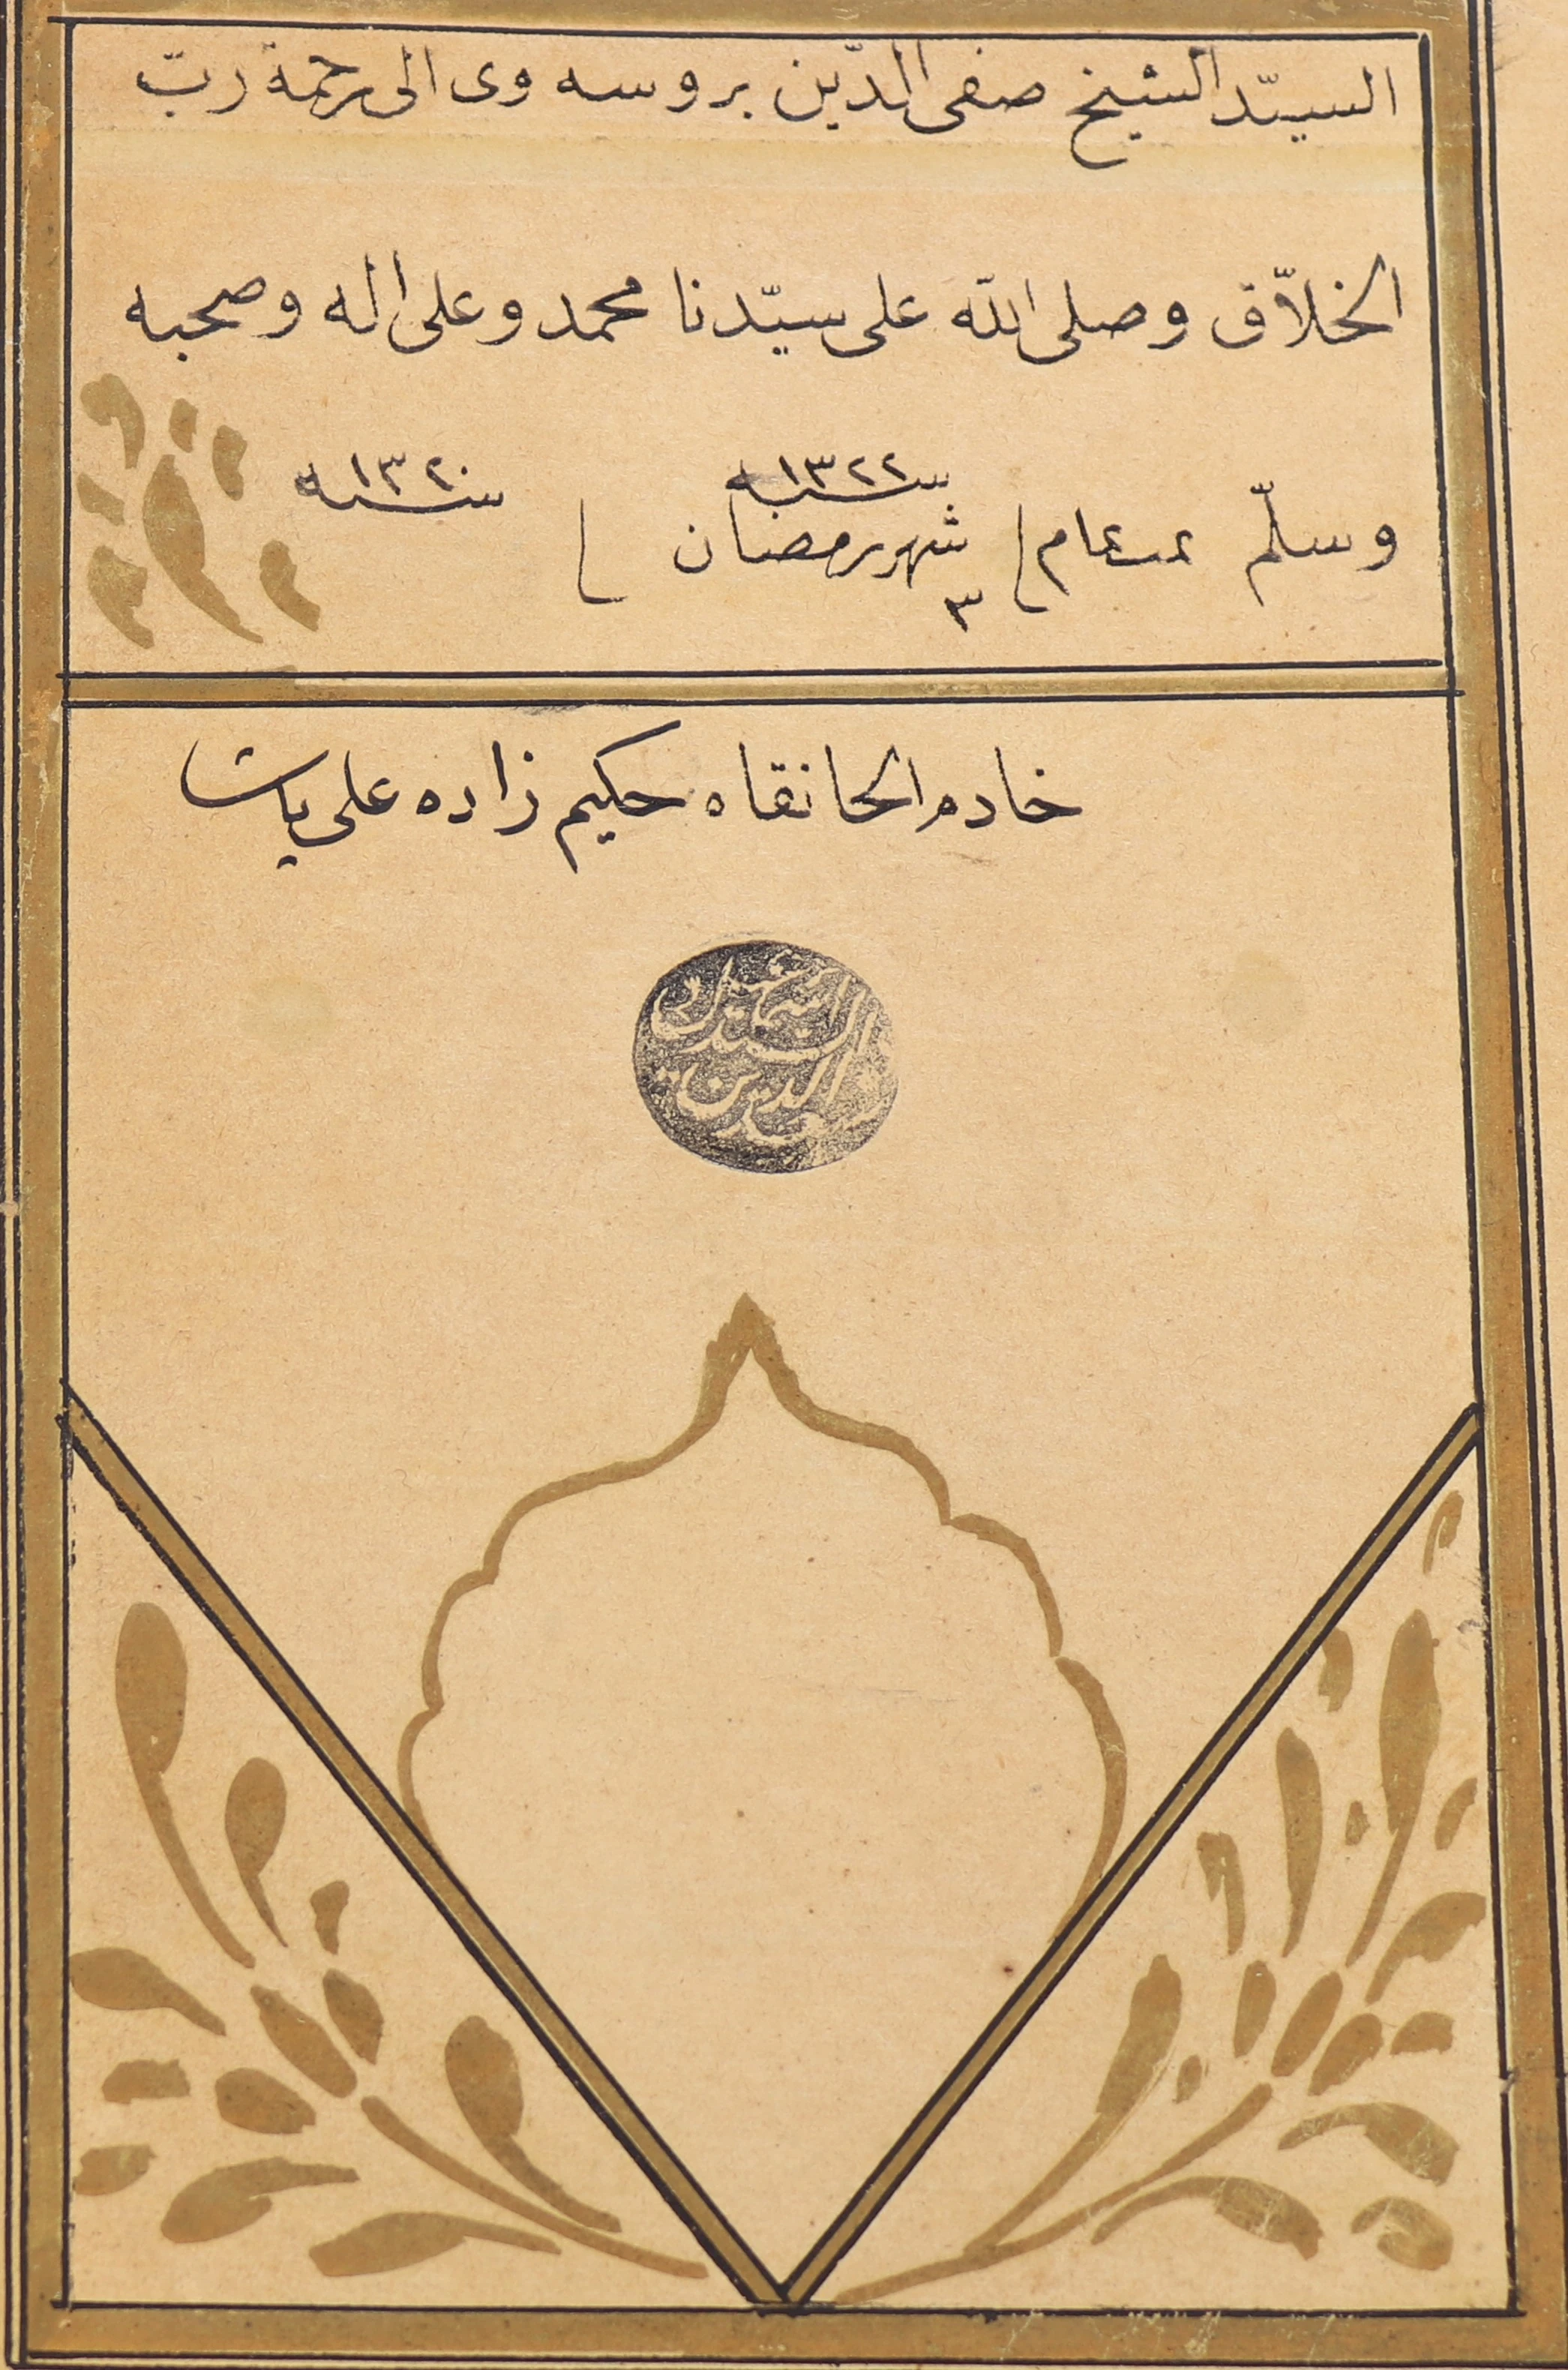 Calligraphy image